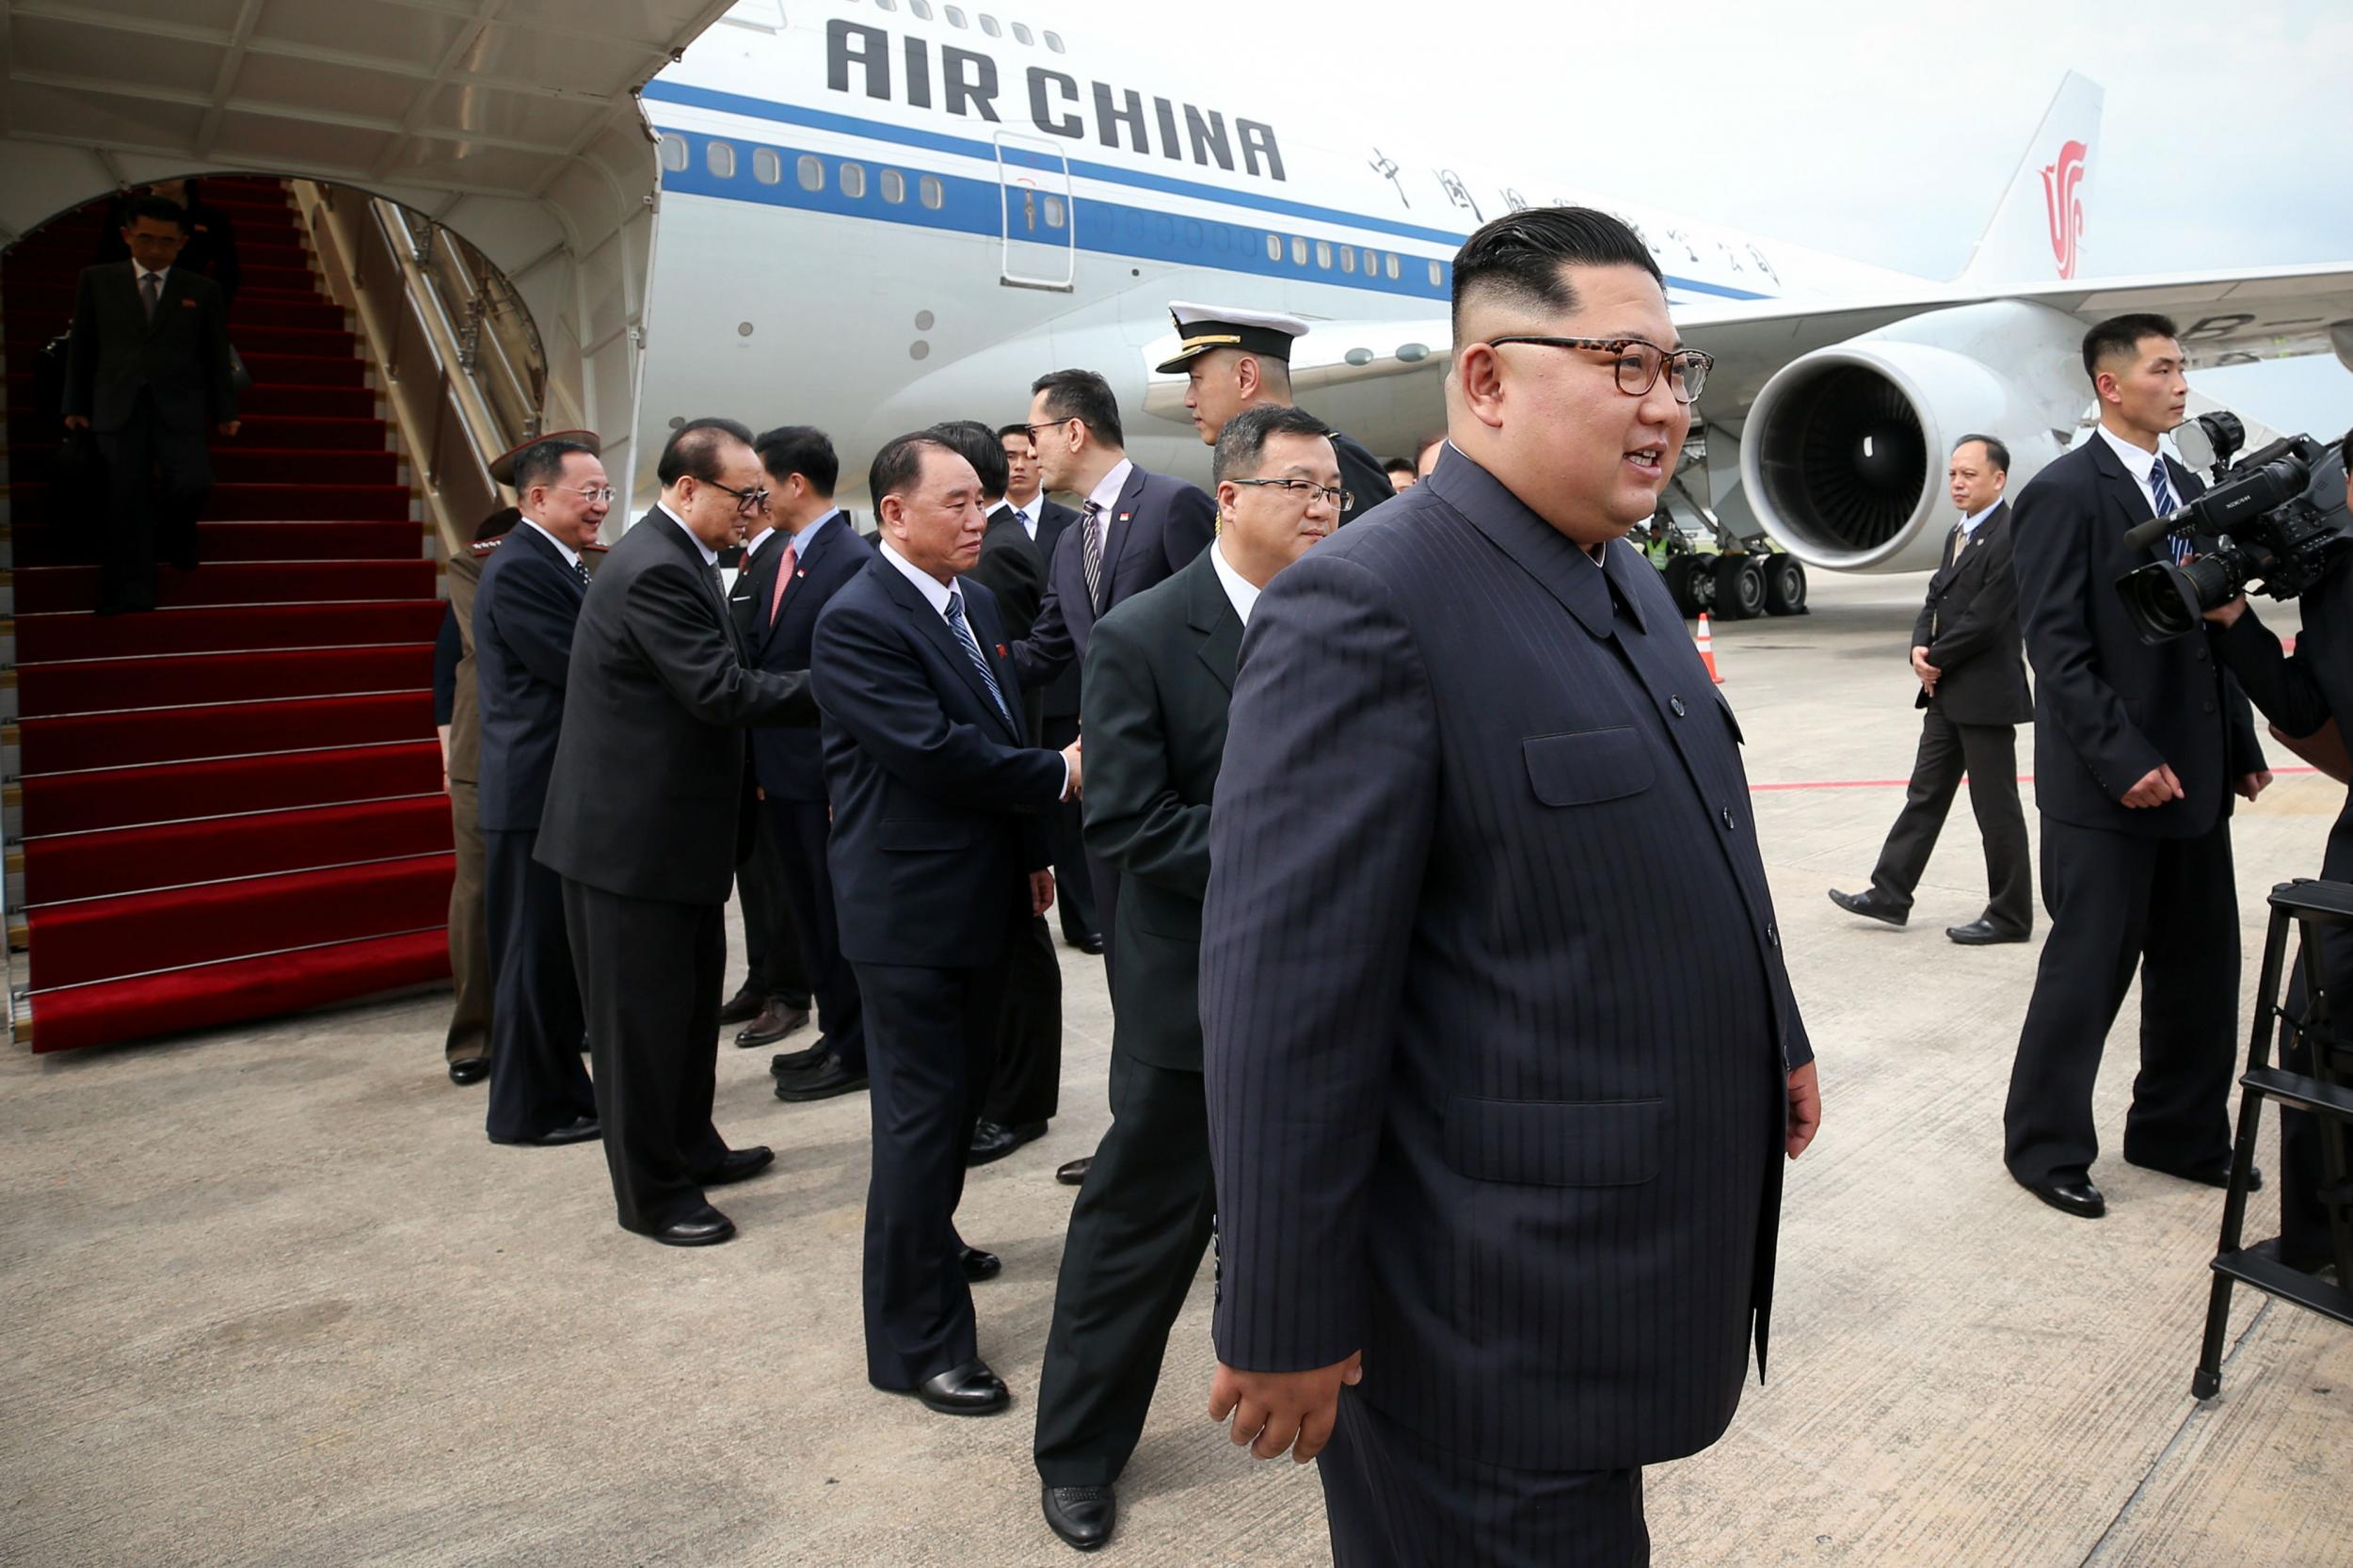 Kim Jong-un arrives at Singapore's Changi airport